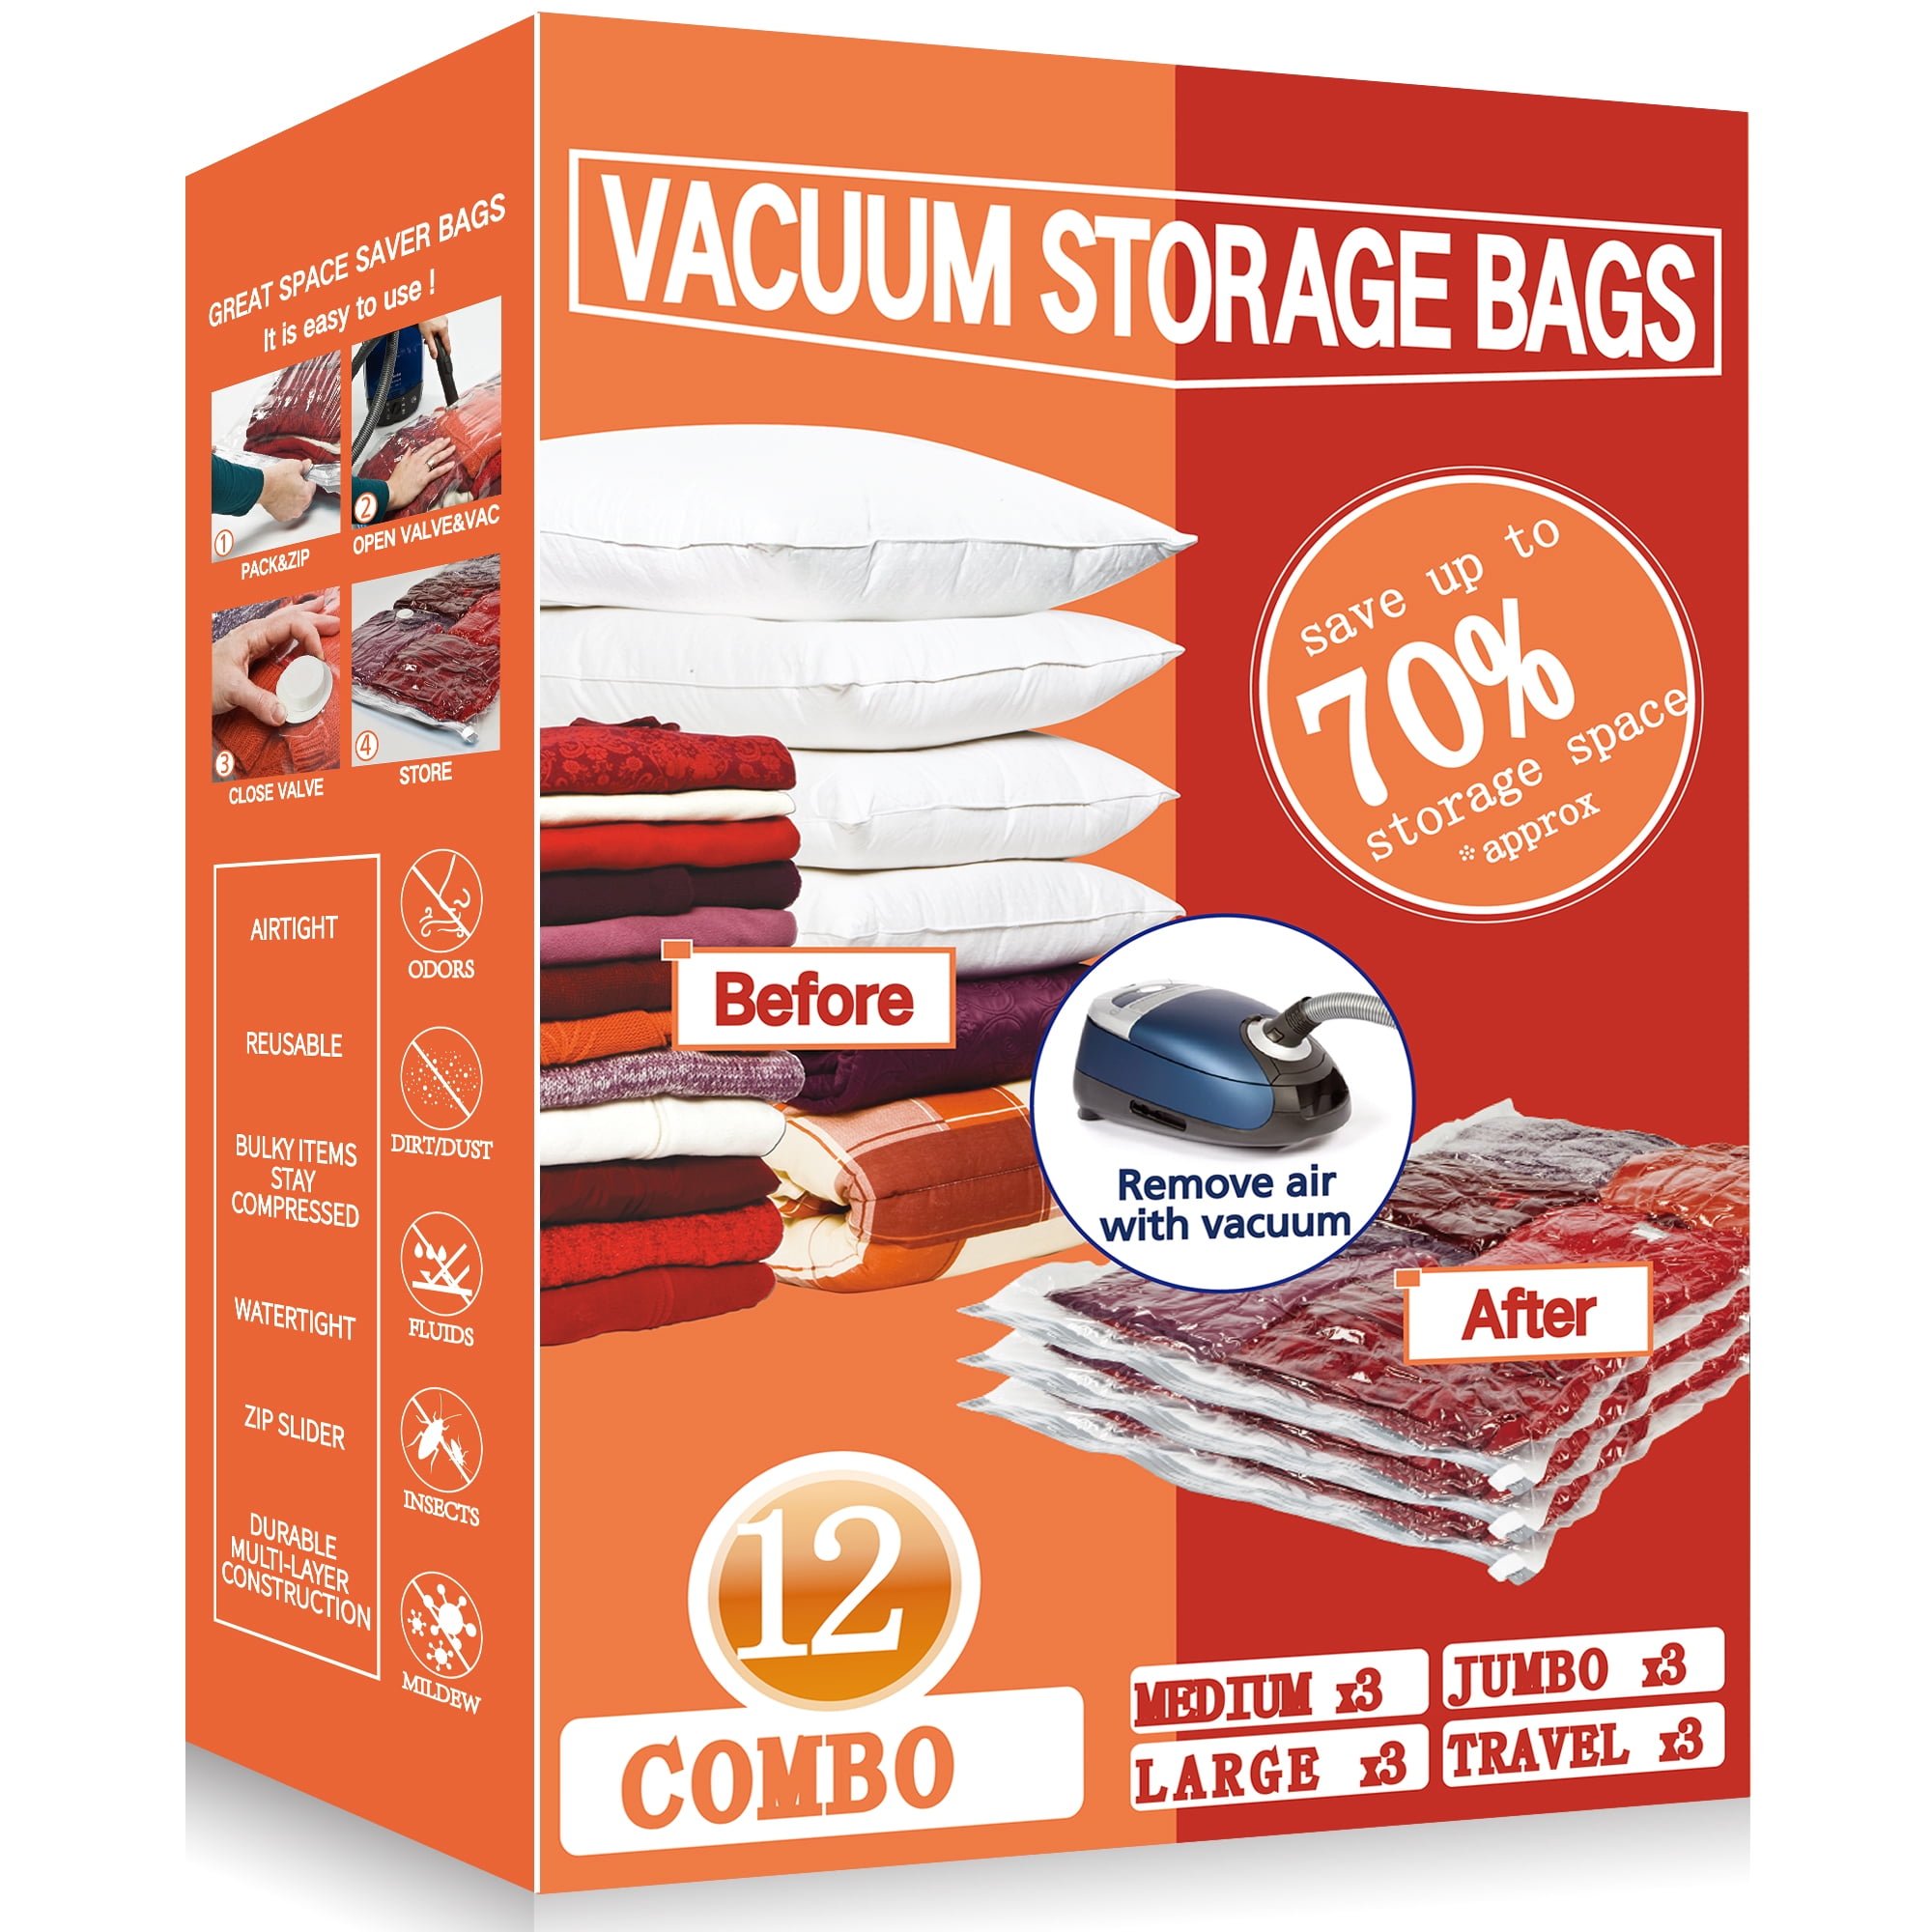 Vacpack Space Saver Bags, 12 Pack Variety Vacuum Storage Bags with